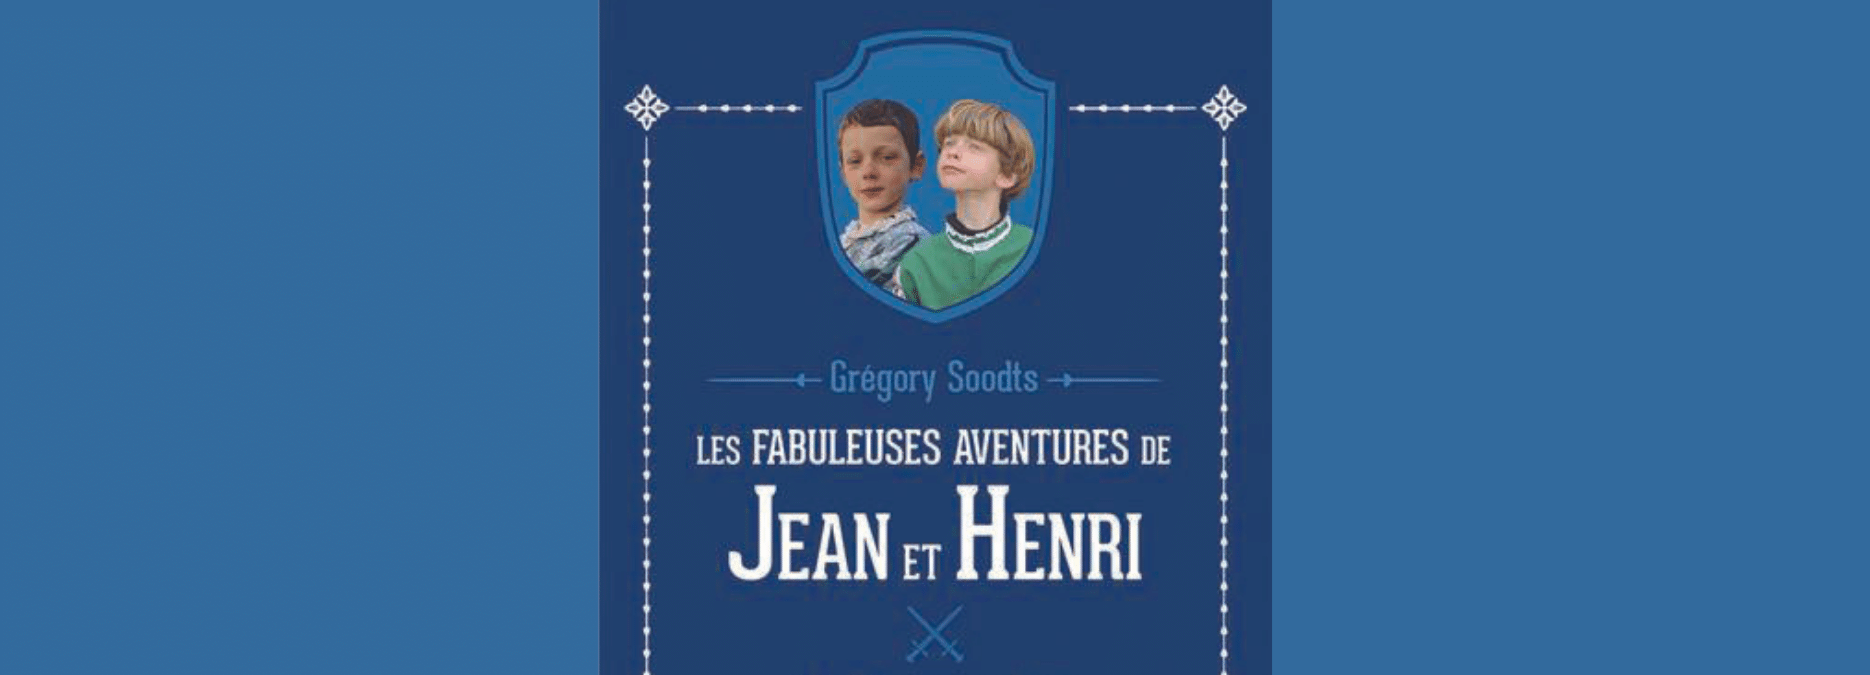 Les fabuleuses aventures de Jean et Henri, tome 1  La seigneurie de Bailly, par Grégory Soodts